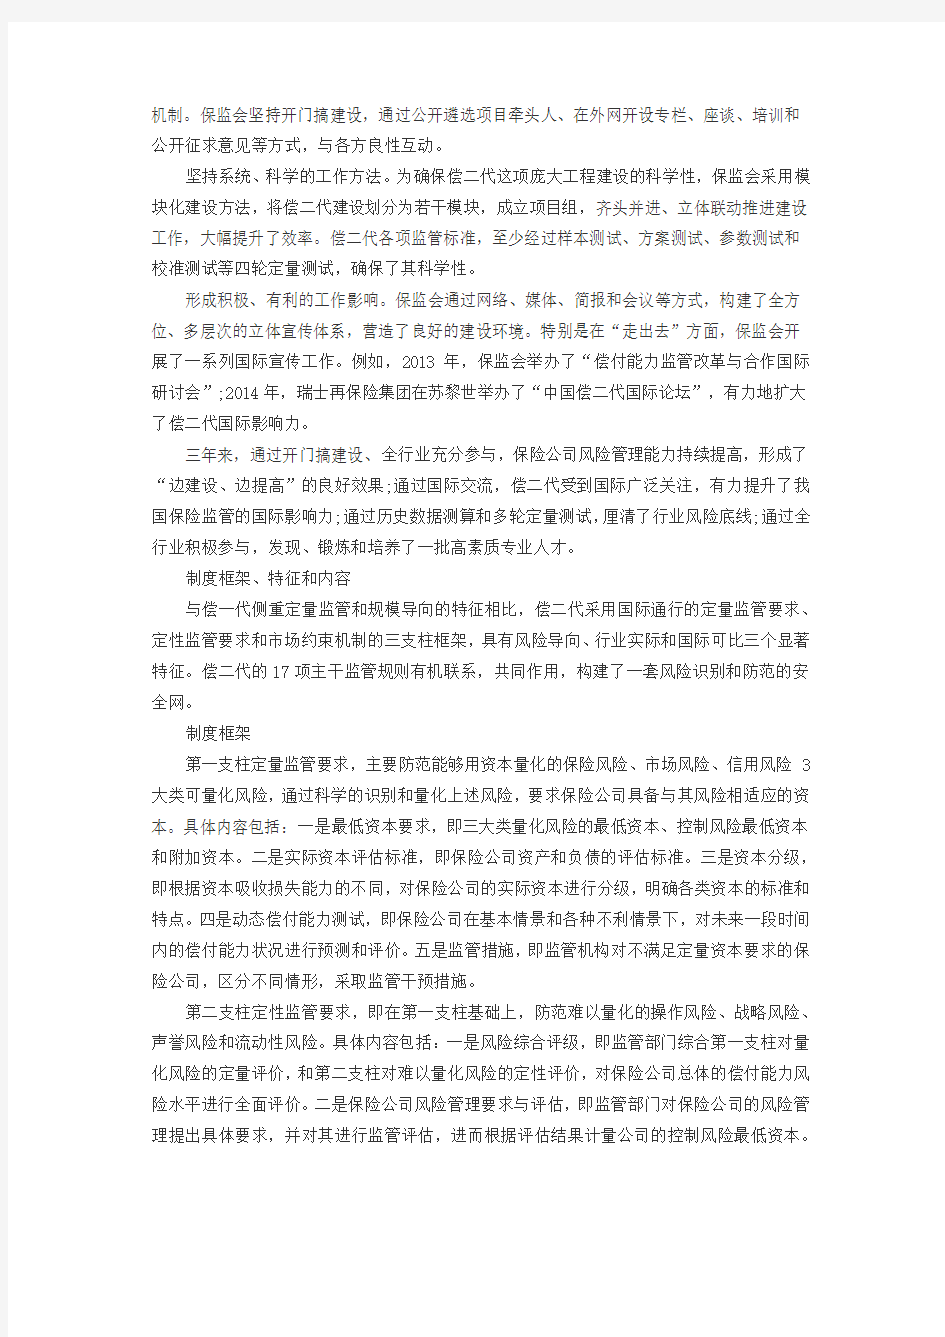 保监会副主席陈文辉阐述偿二代框架和实施路径0303